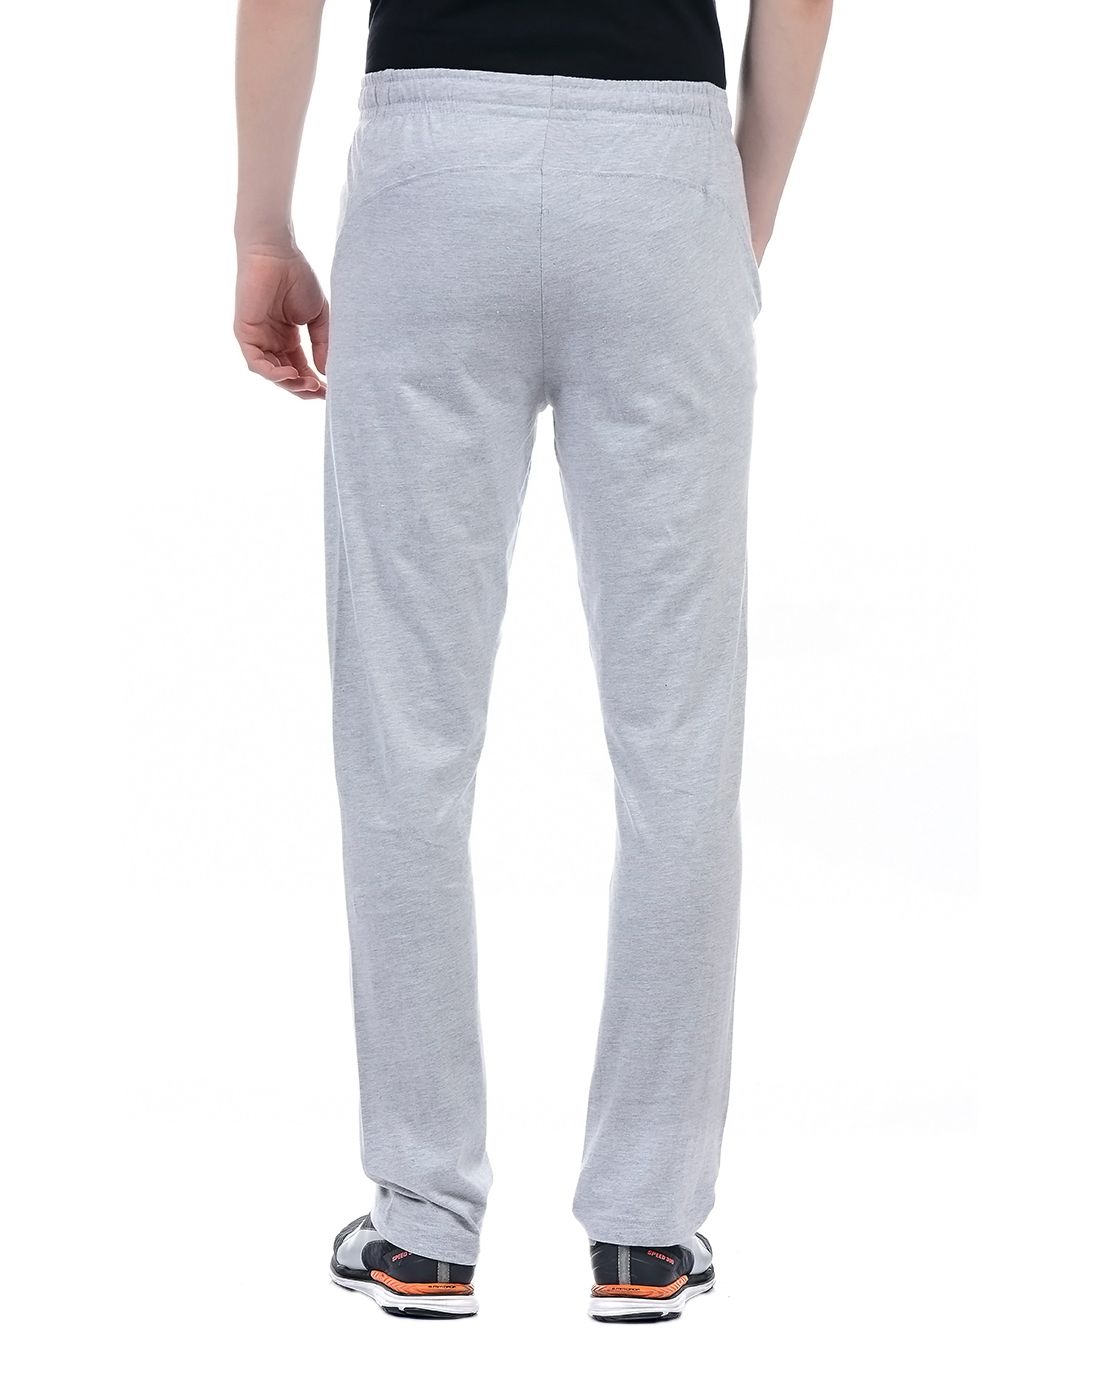 Hanes Grey Cotton Trackpants - Buy Hanes Grey Cotton Trackpants Online ...